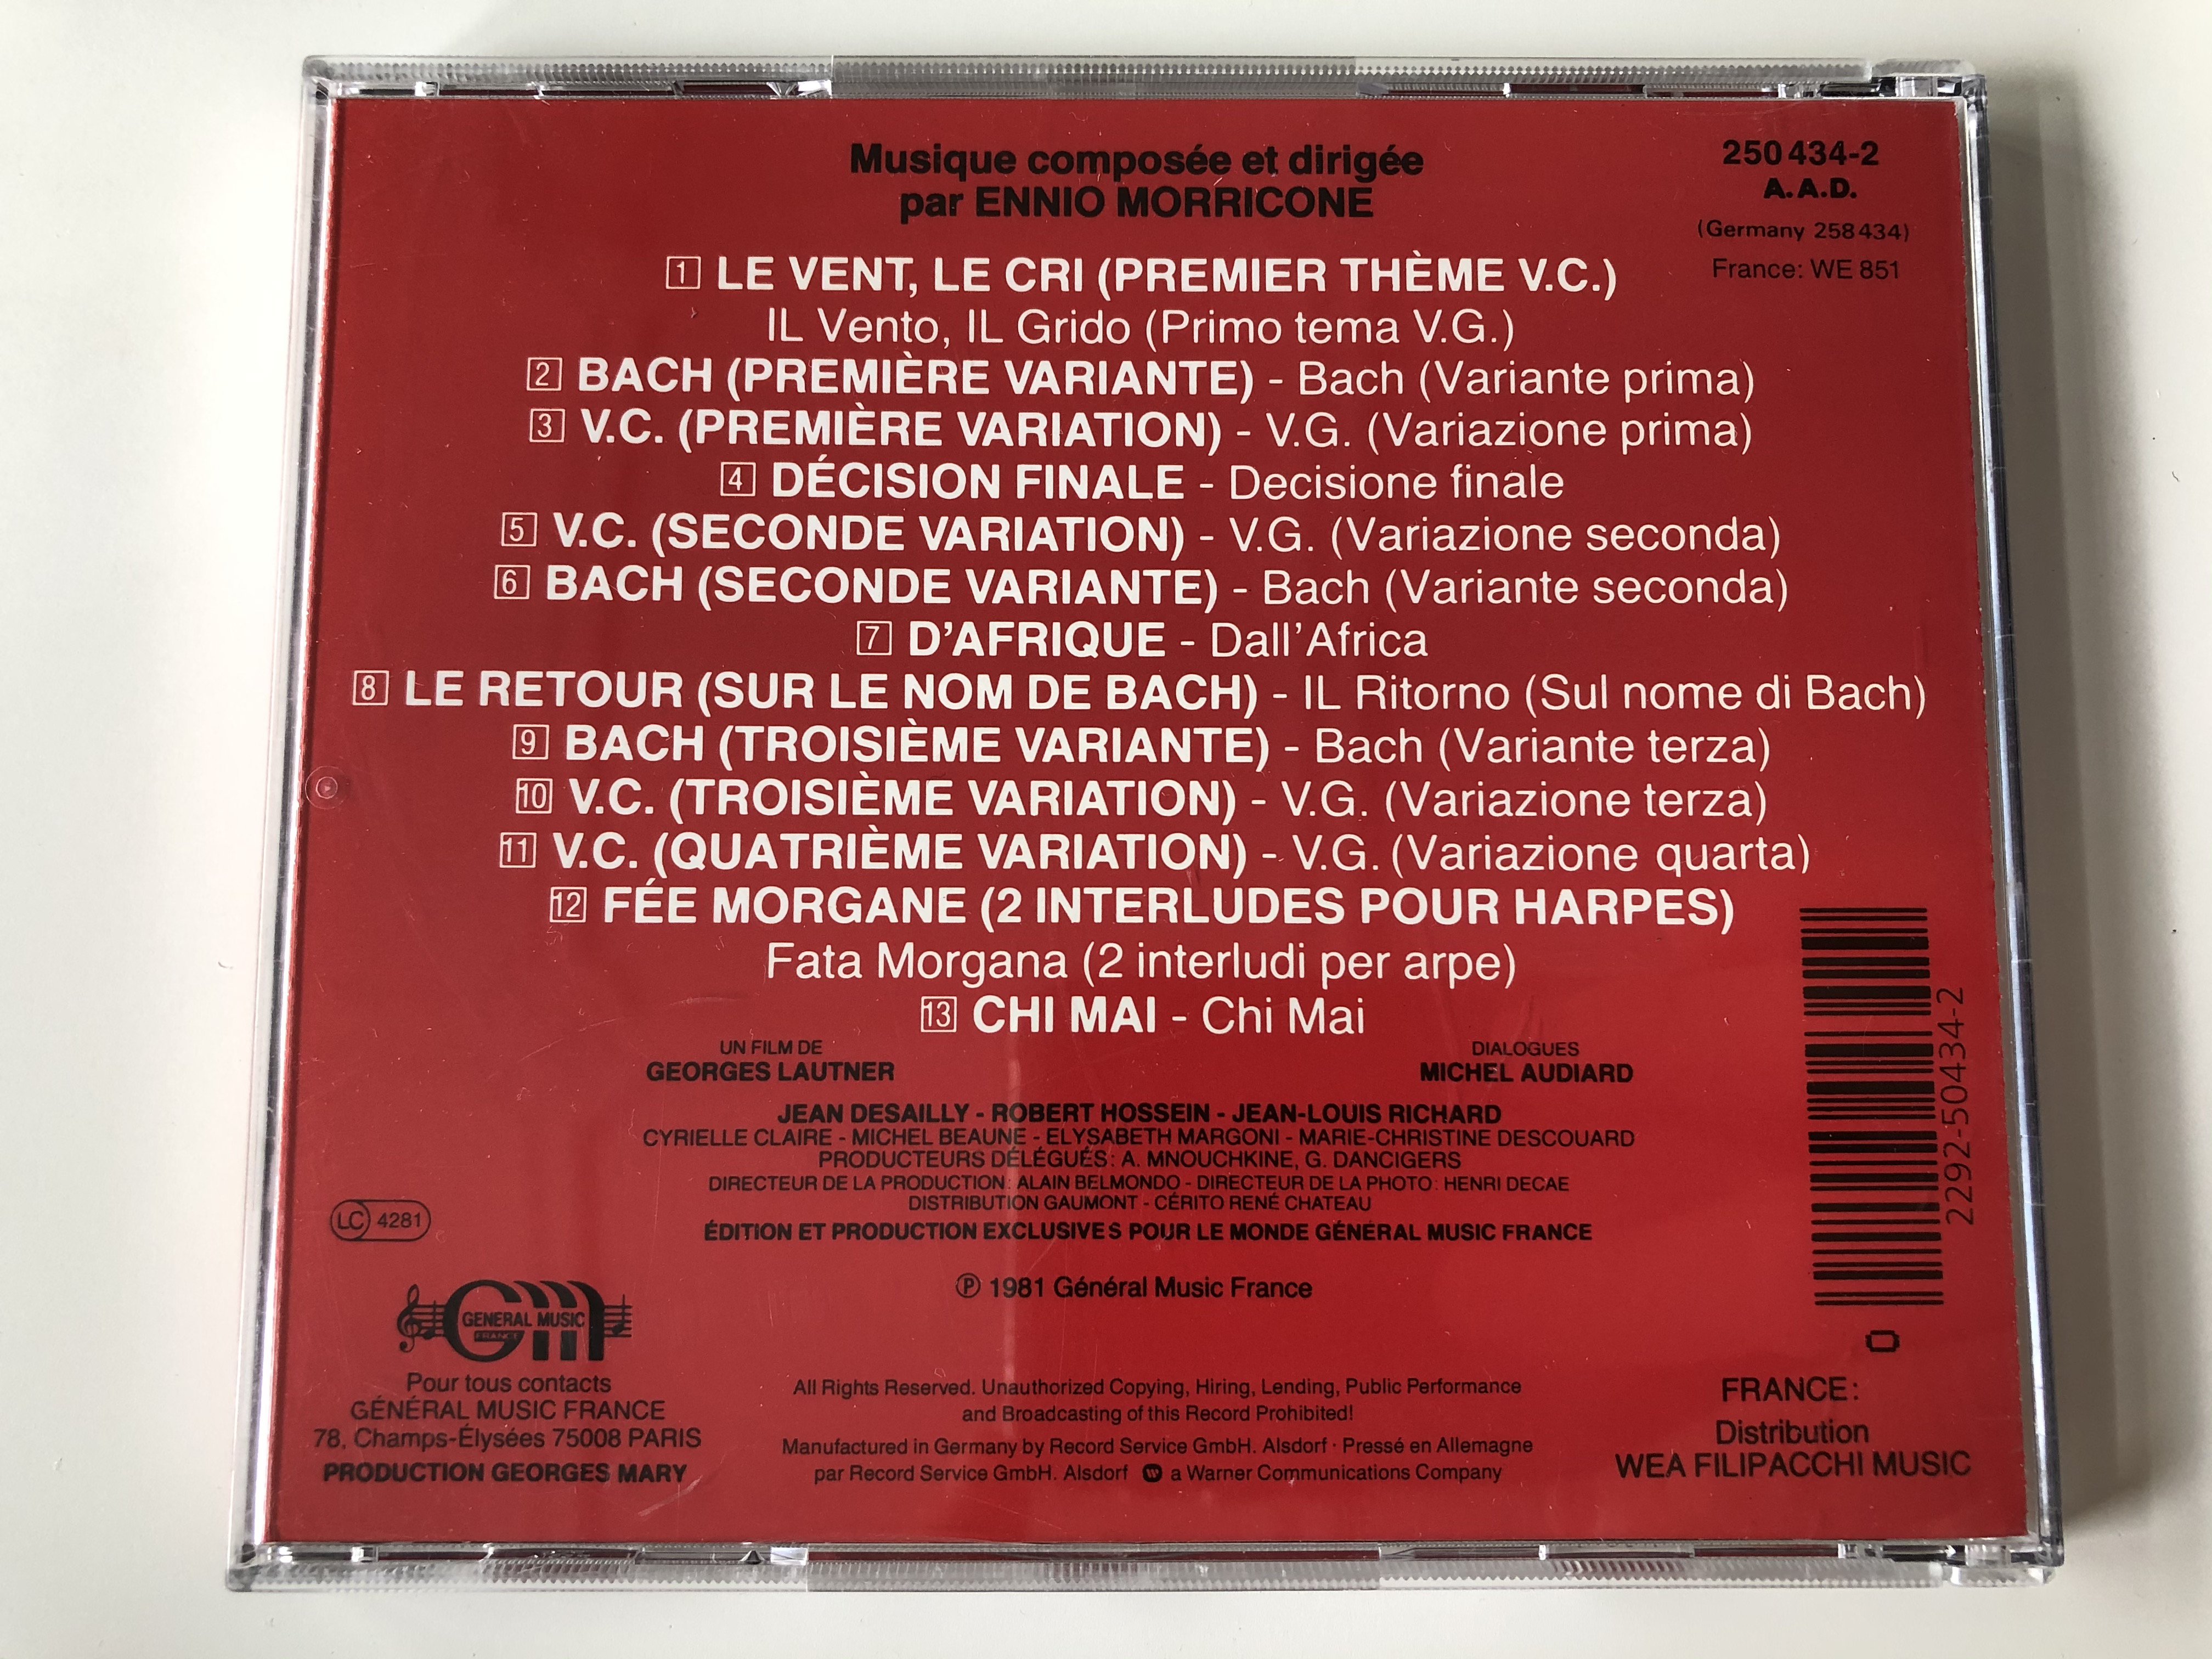 musique-de-ennio-morricone-bande-originale-du-film-jean-paul-belmondo-le-professionnel-g-n-ral-music-france-audio-cd-1981-250-434-2-3-.jpg